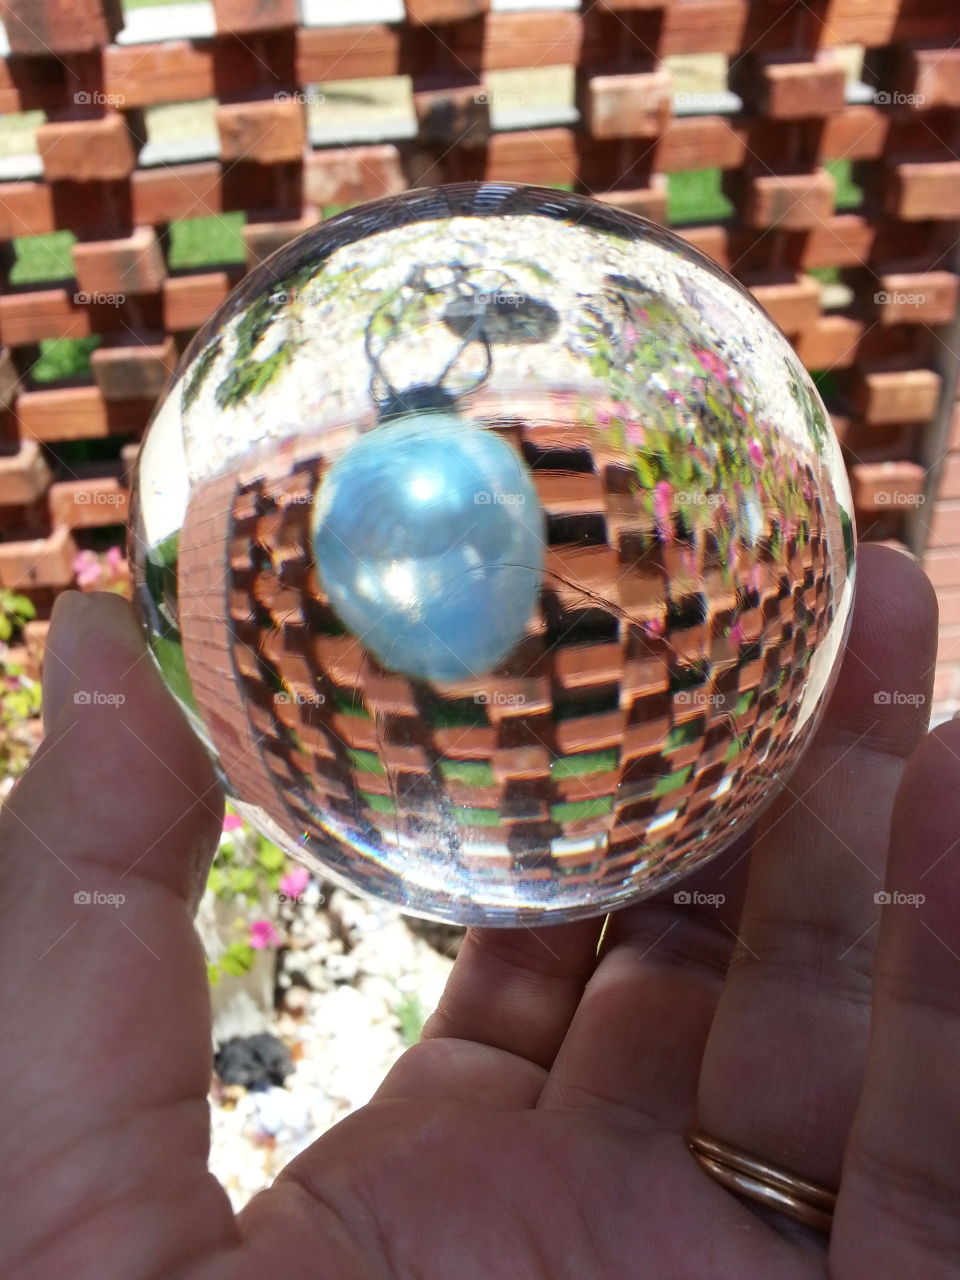 Reflection in magic ball